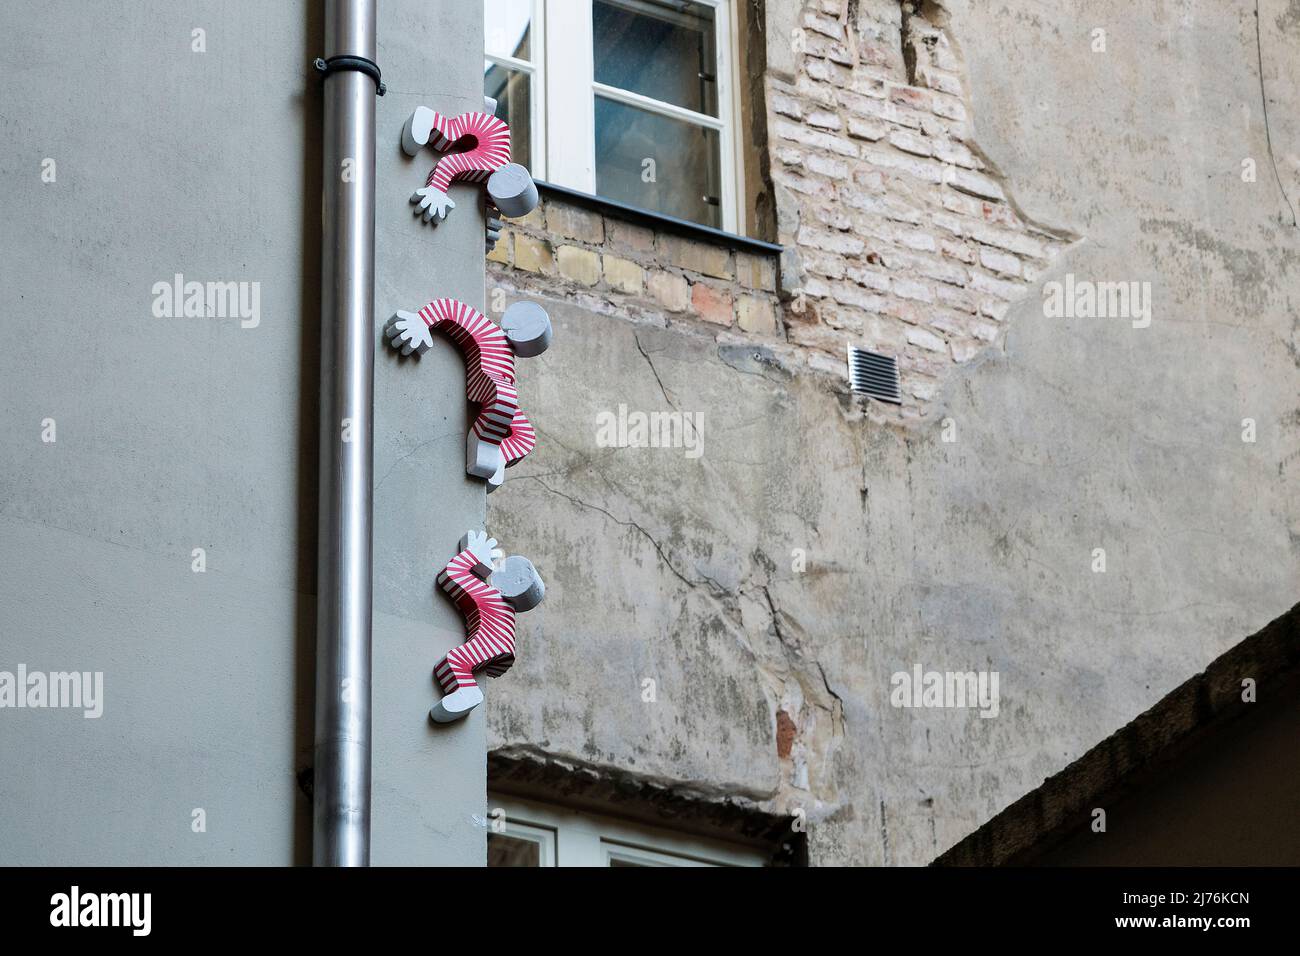 Berlin, Mitte, Scheunenviertel, Rosenthaler Straße, courtyard, climbing figures, urban art Stock Photo